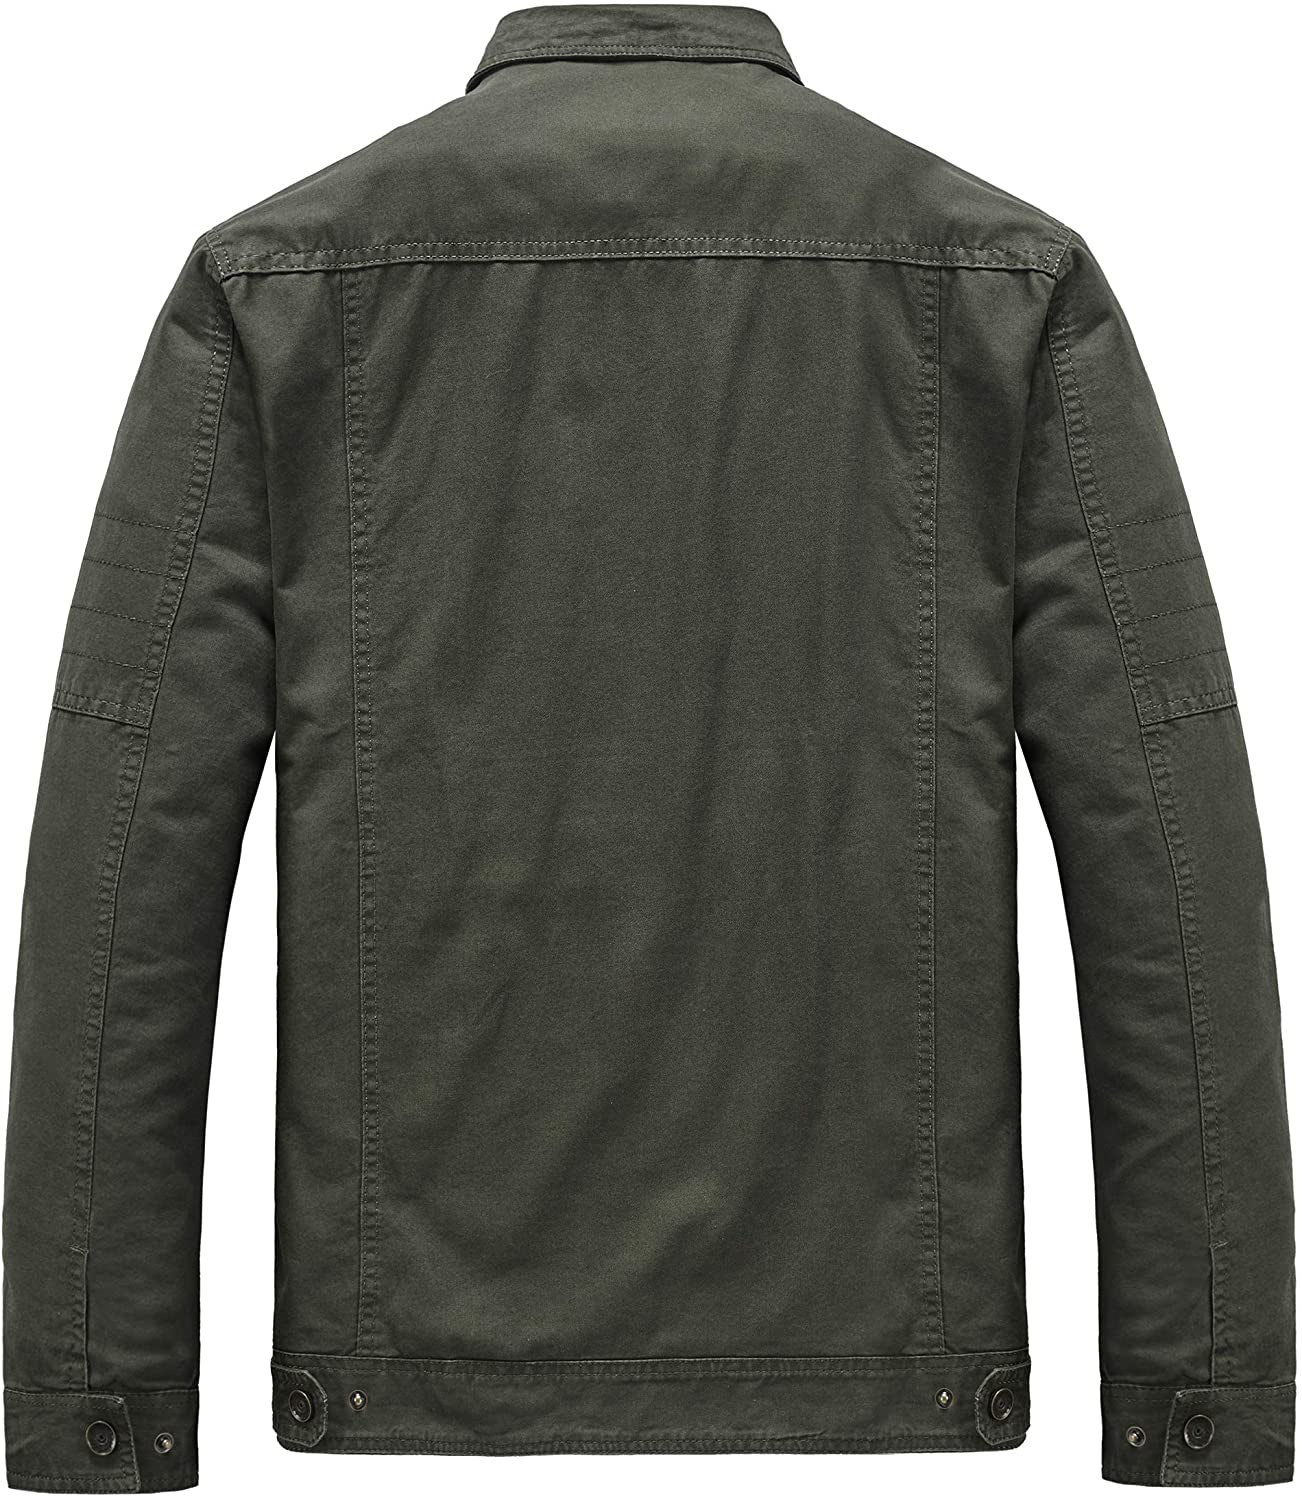 Heihuohua Men's Casual Military Jacket Cotton Field Jacket | eBay